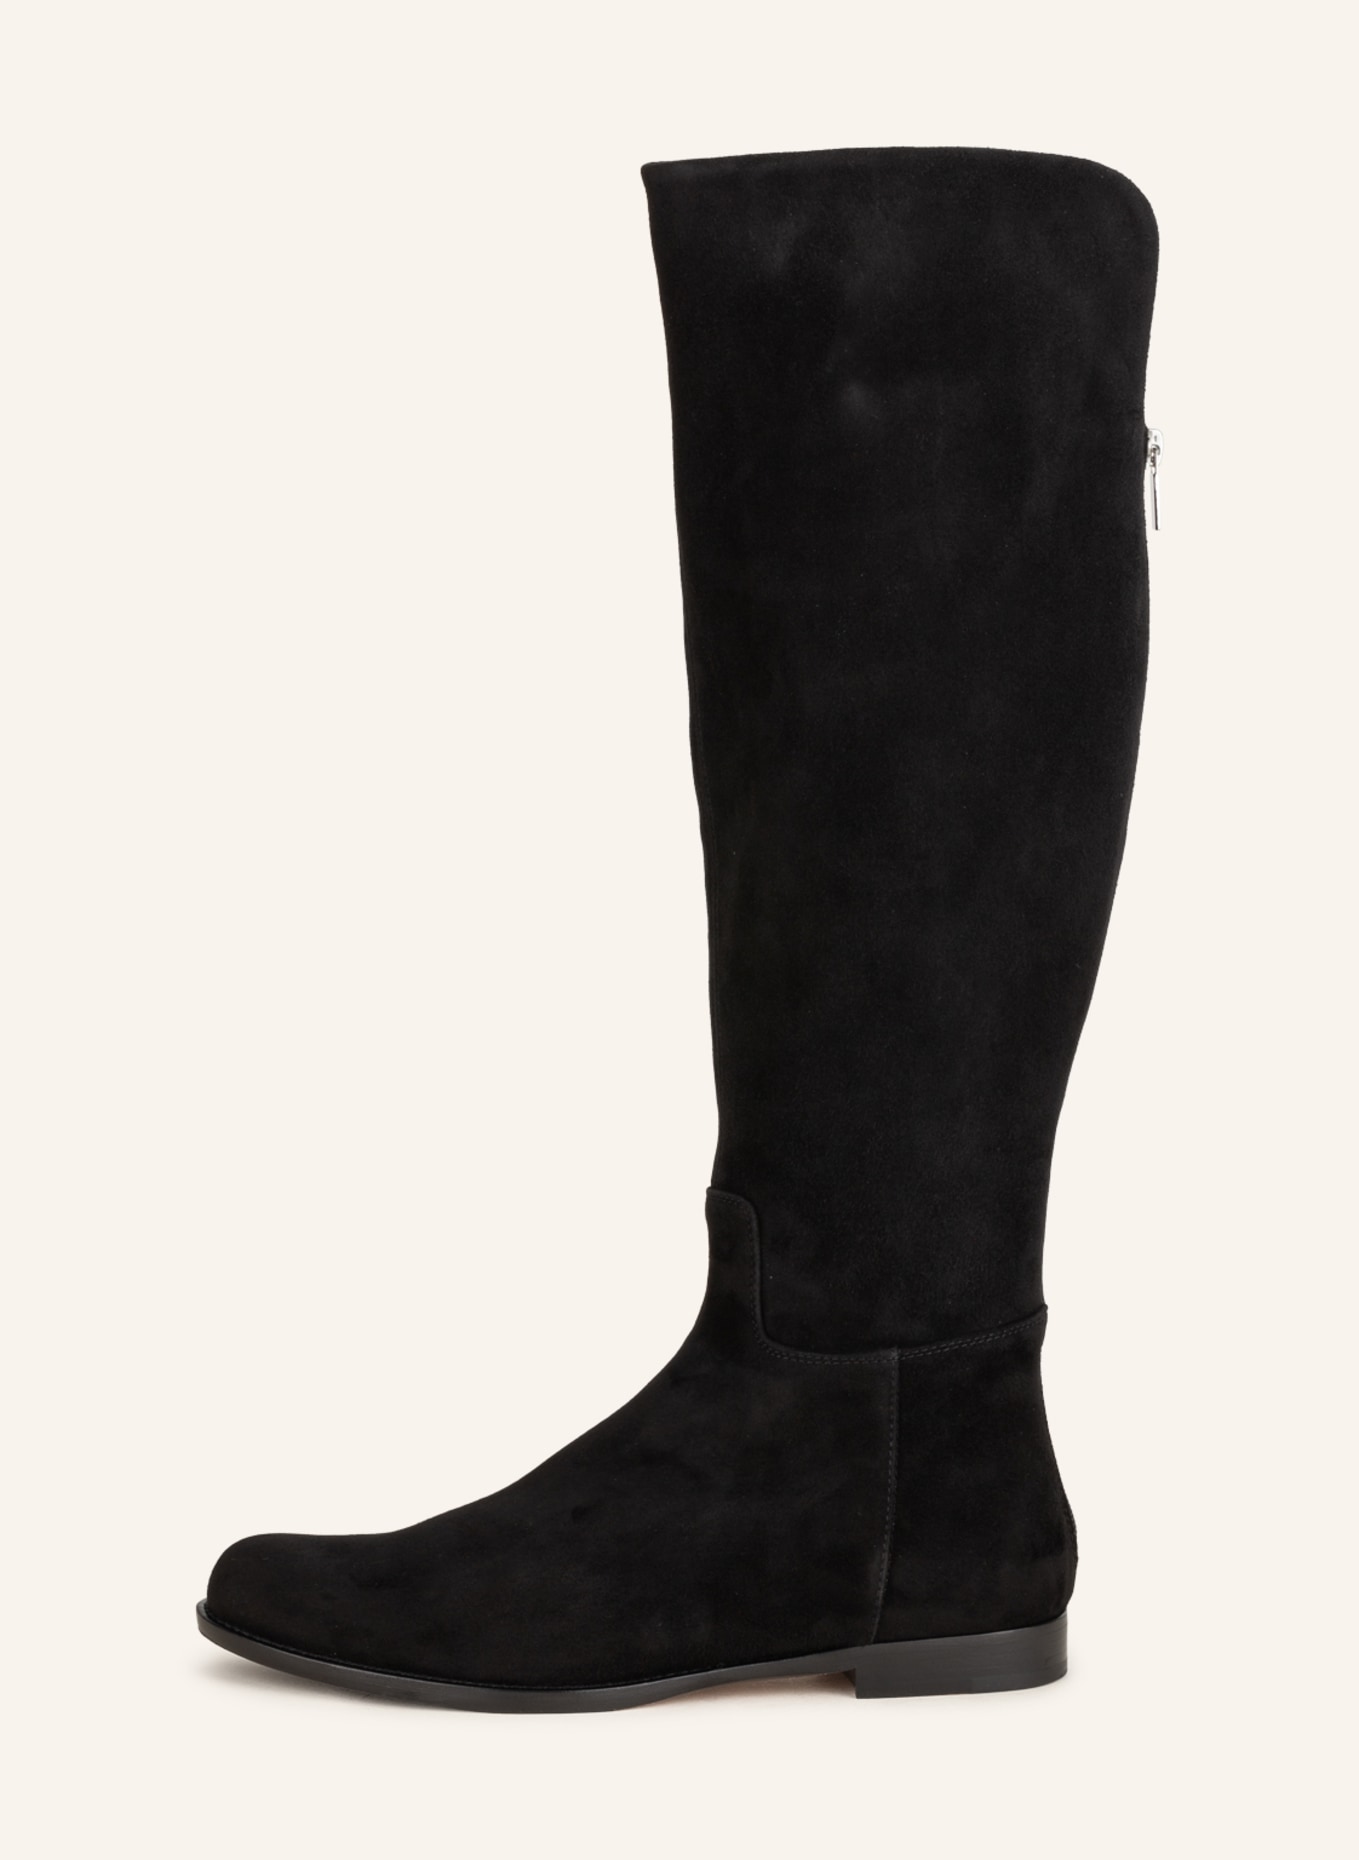 UNÜTZER Boots, Color: BLACK (Image 4)